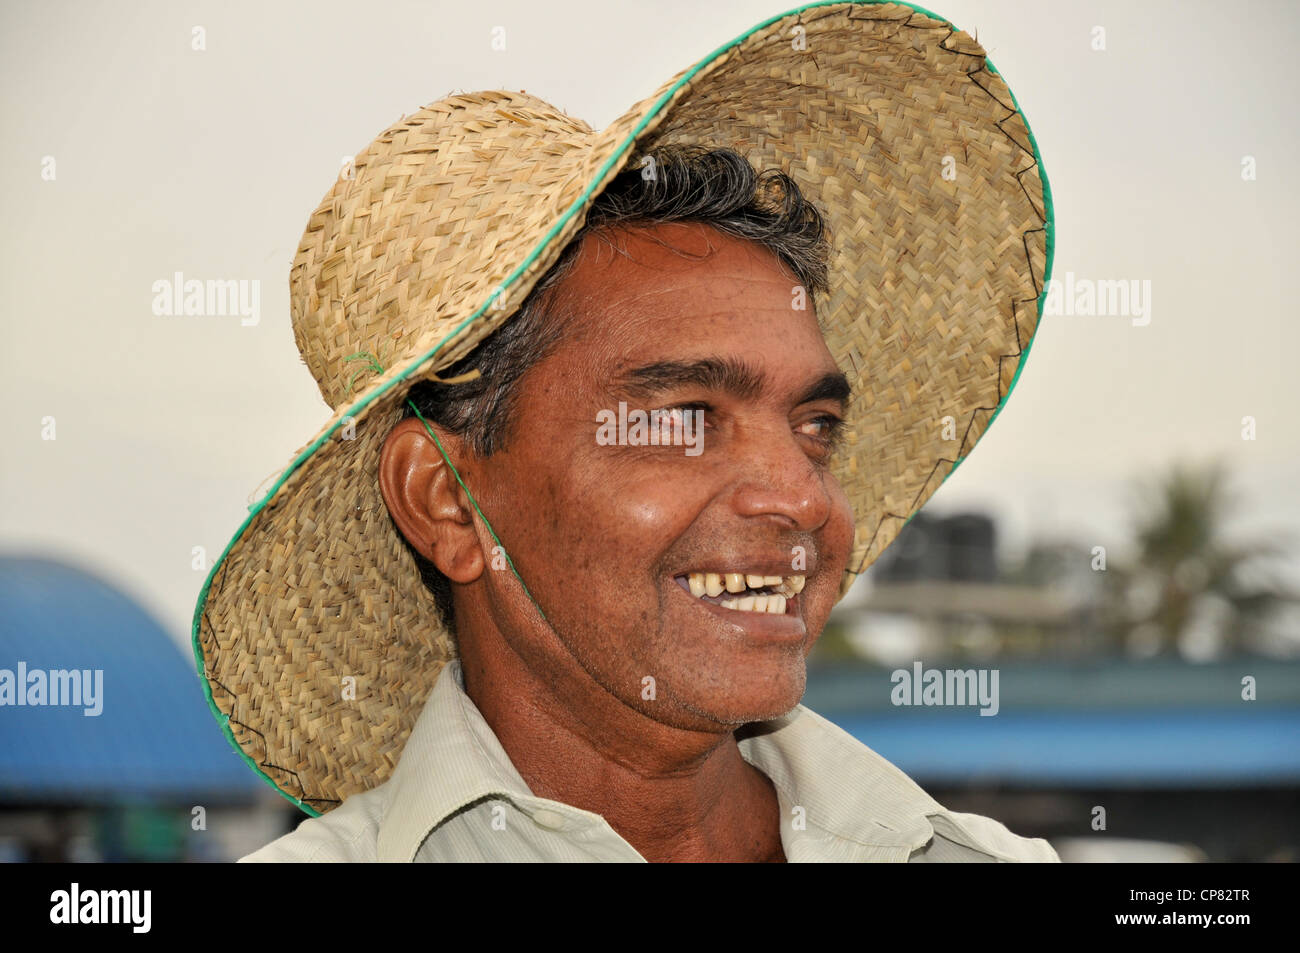 Marché aux poissons de Negombo, Sri Lanka. Portrait d'un pêcheur local Banque D'Images